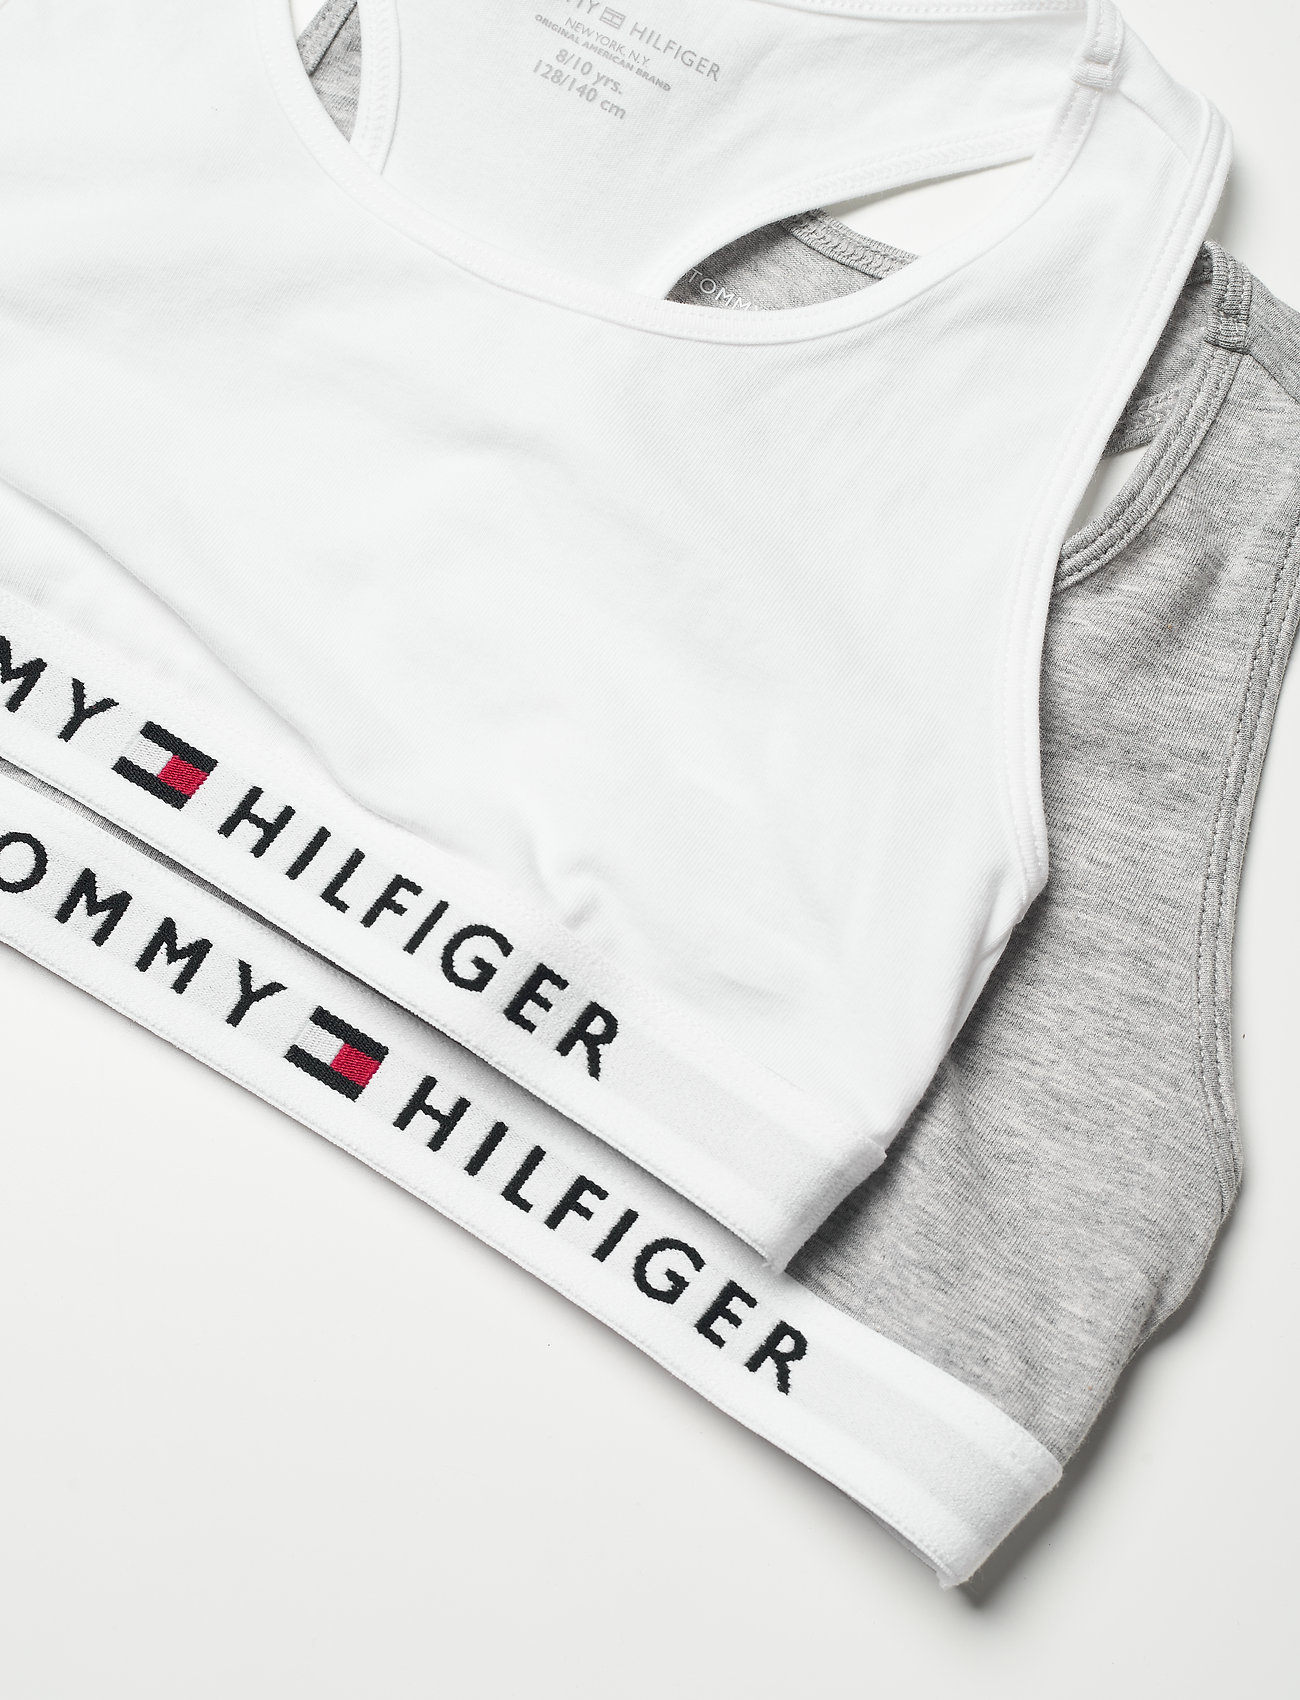 Tommy Hilfiger - 2P BRALETTE - night & underwear - mid grey heather/white - 1